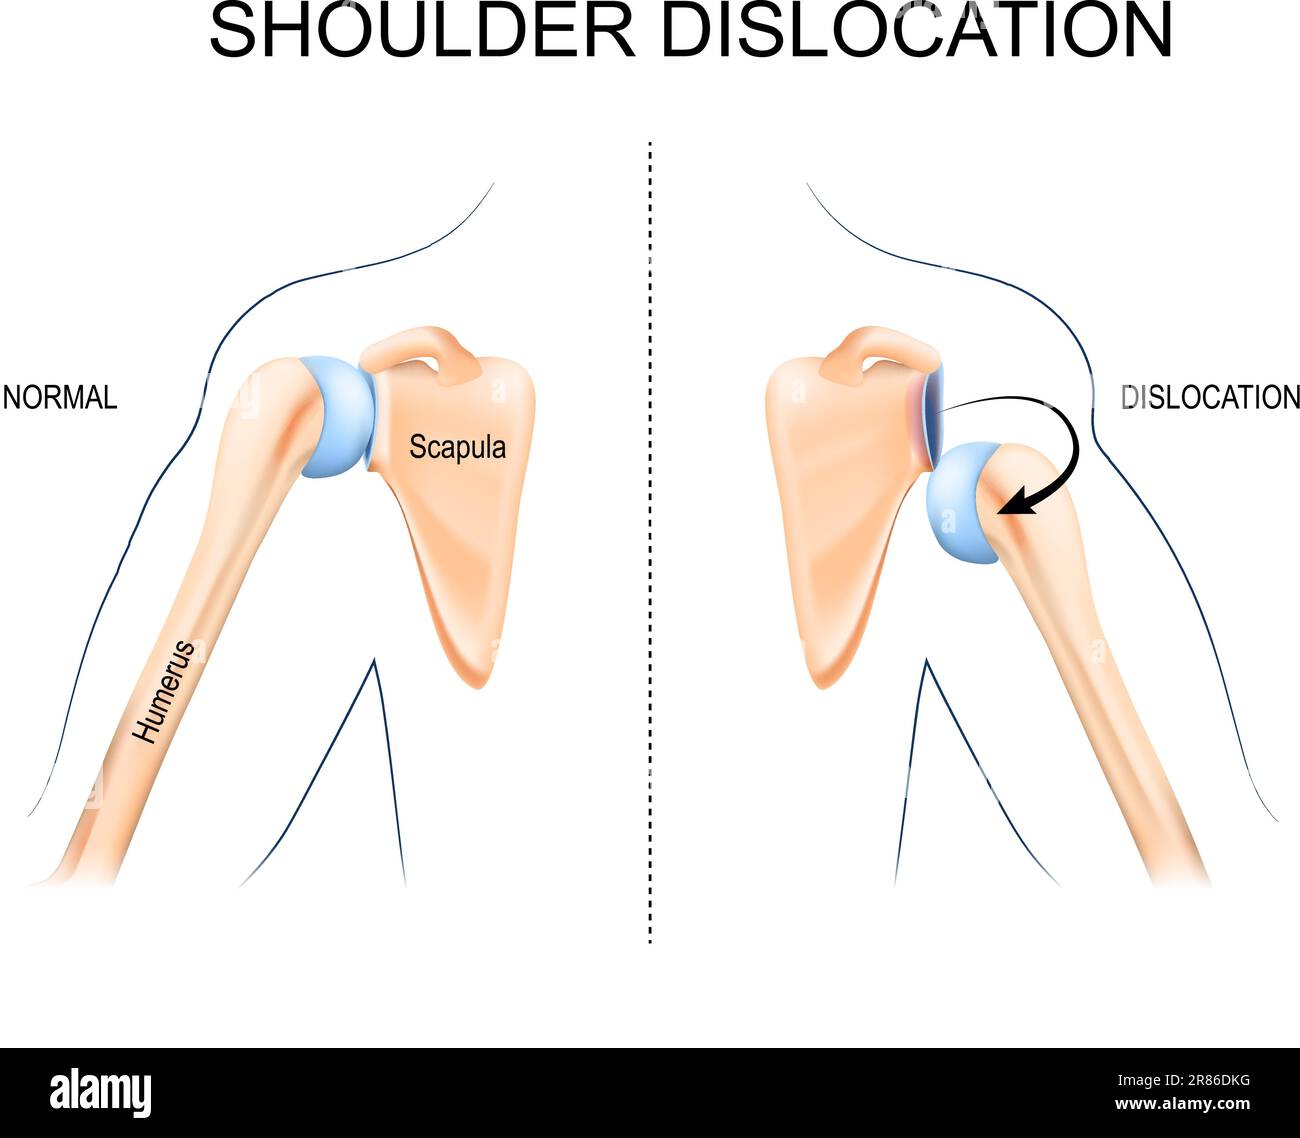 Schulterluxation. Oberarmknochentrauma, Sportverletzungen oder schwache Schultermuskulatur. Die Anatomie des menschlichen Arms. Knochen und Gelenk der Schulter und Hand. Stock Vektor